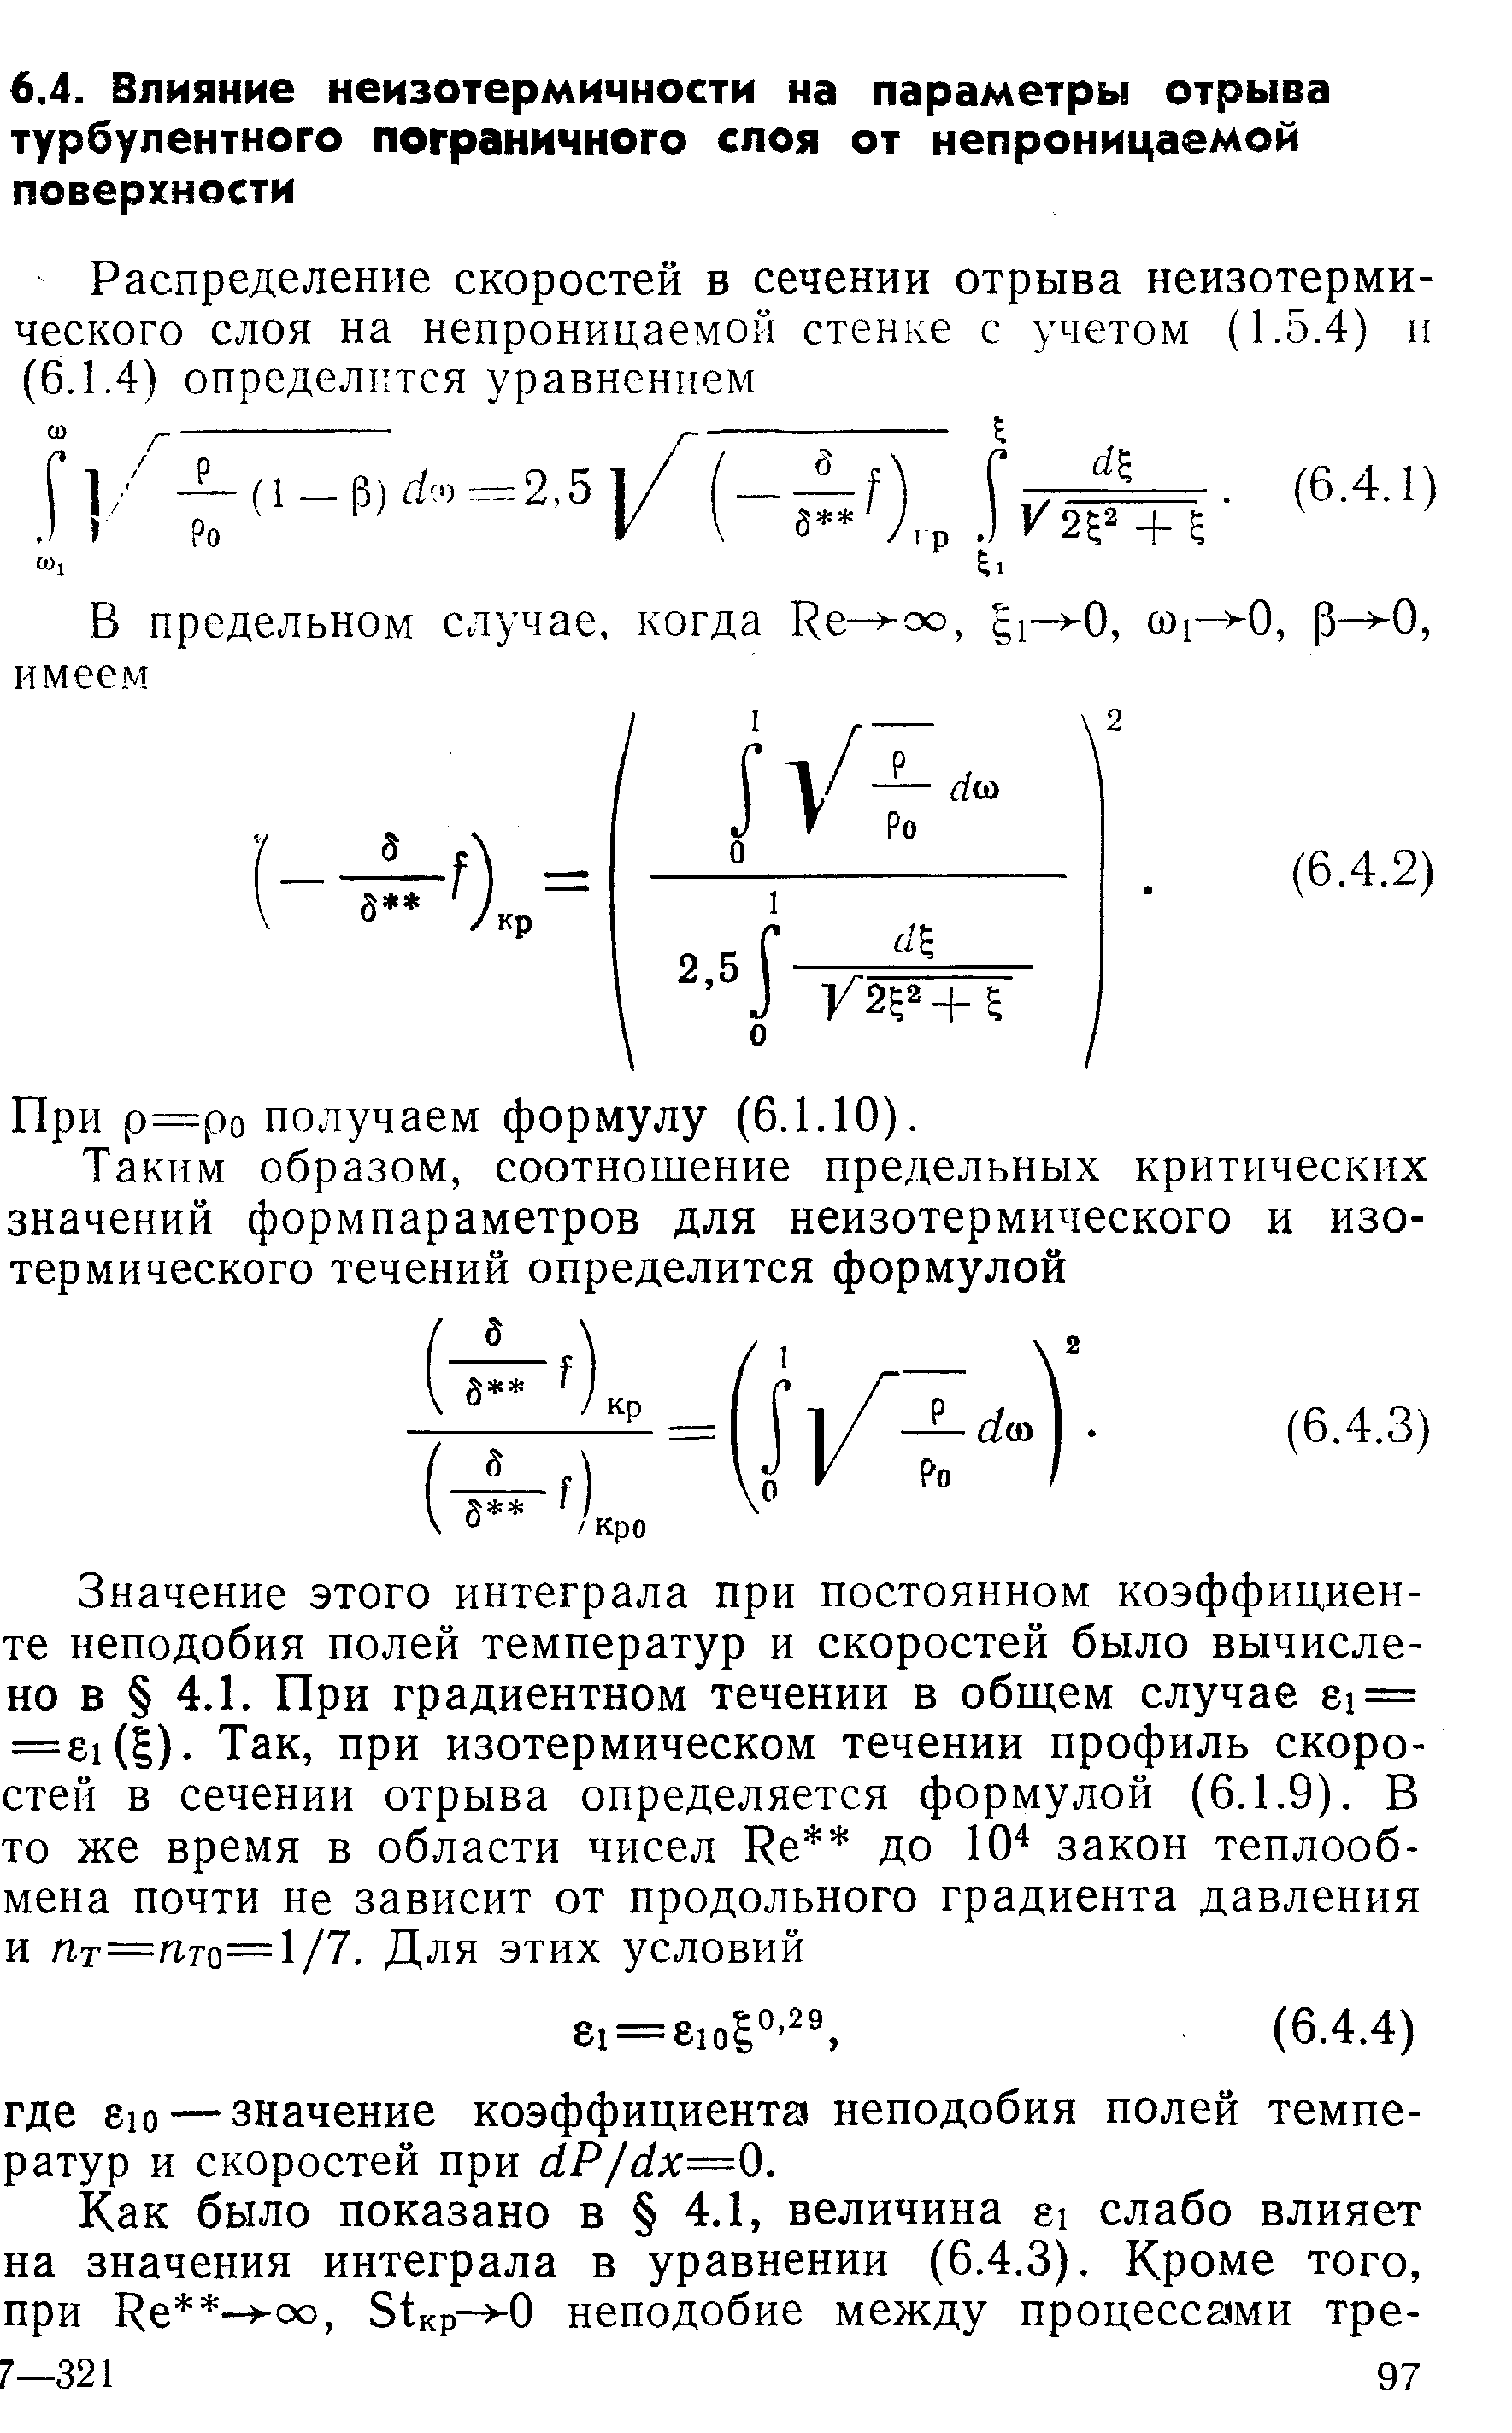 При р=ро получаем формулу (6.1.10).
